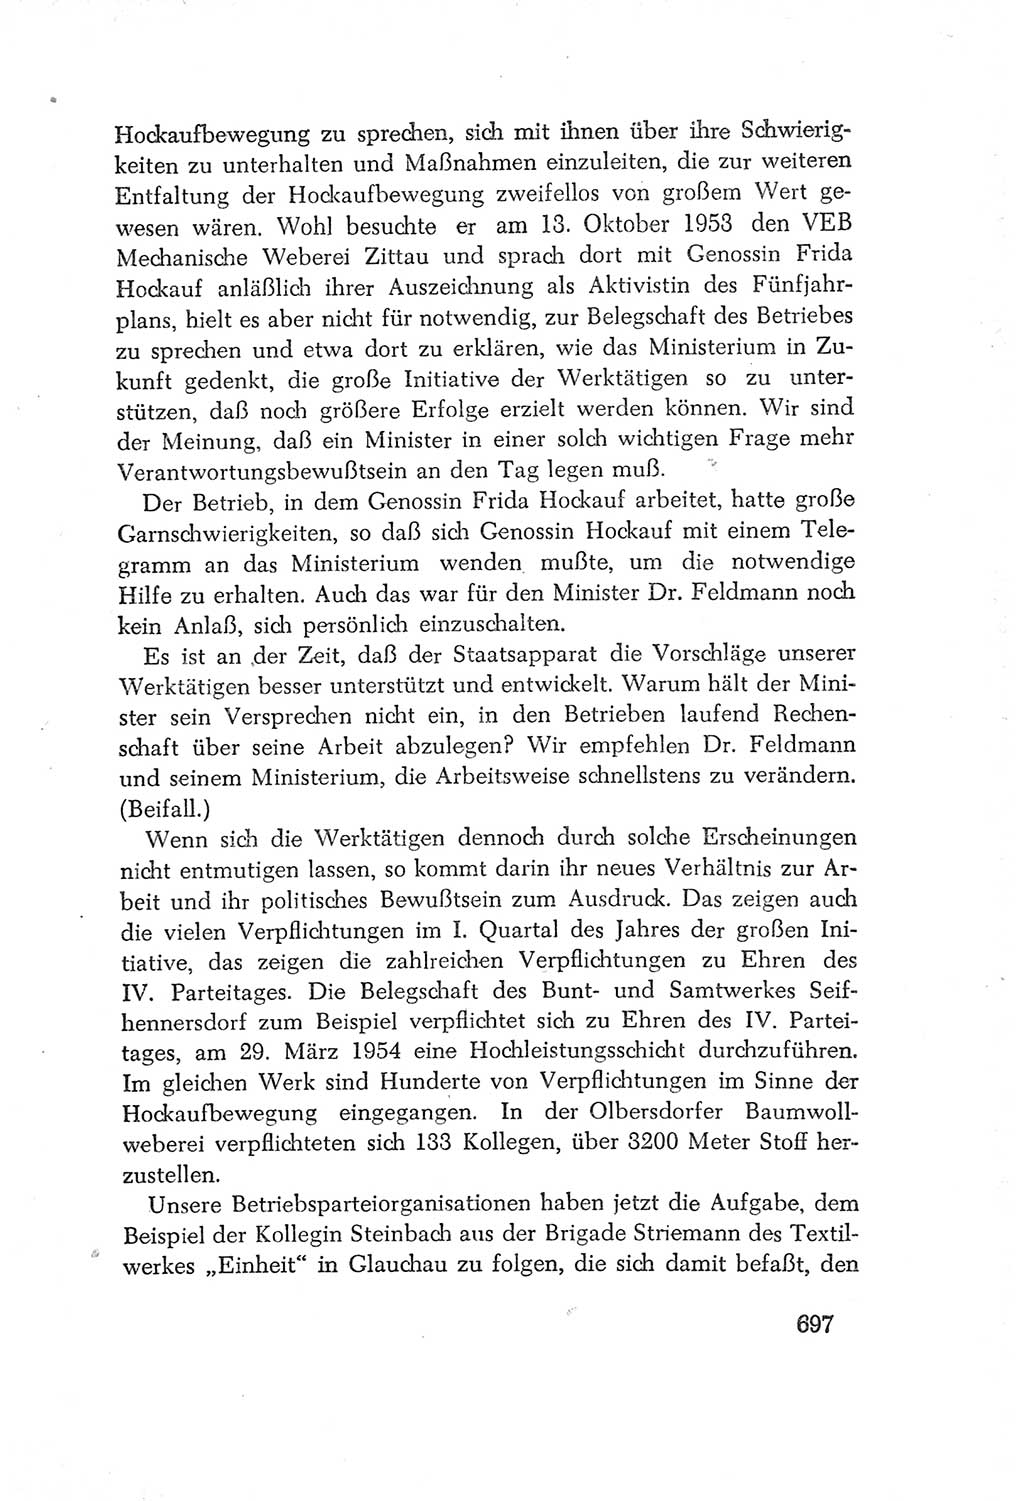 Protokoll der Verhandlungen des Ⅳ. Parteitages der Sozialistischen Einheitspartei Deutschlands (SED) [Deutsche Demokratische Republik (DDR)] 1954, Seite 697